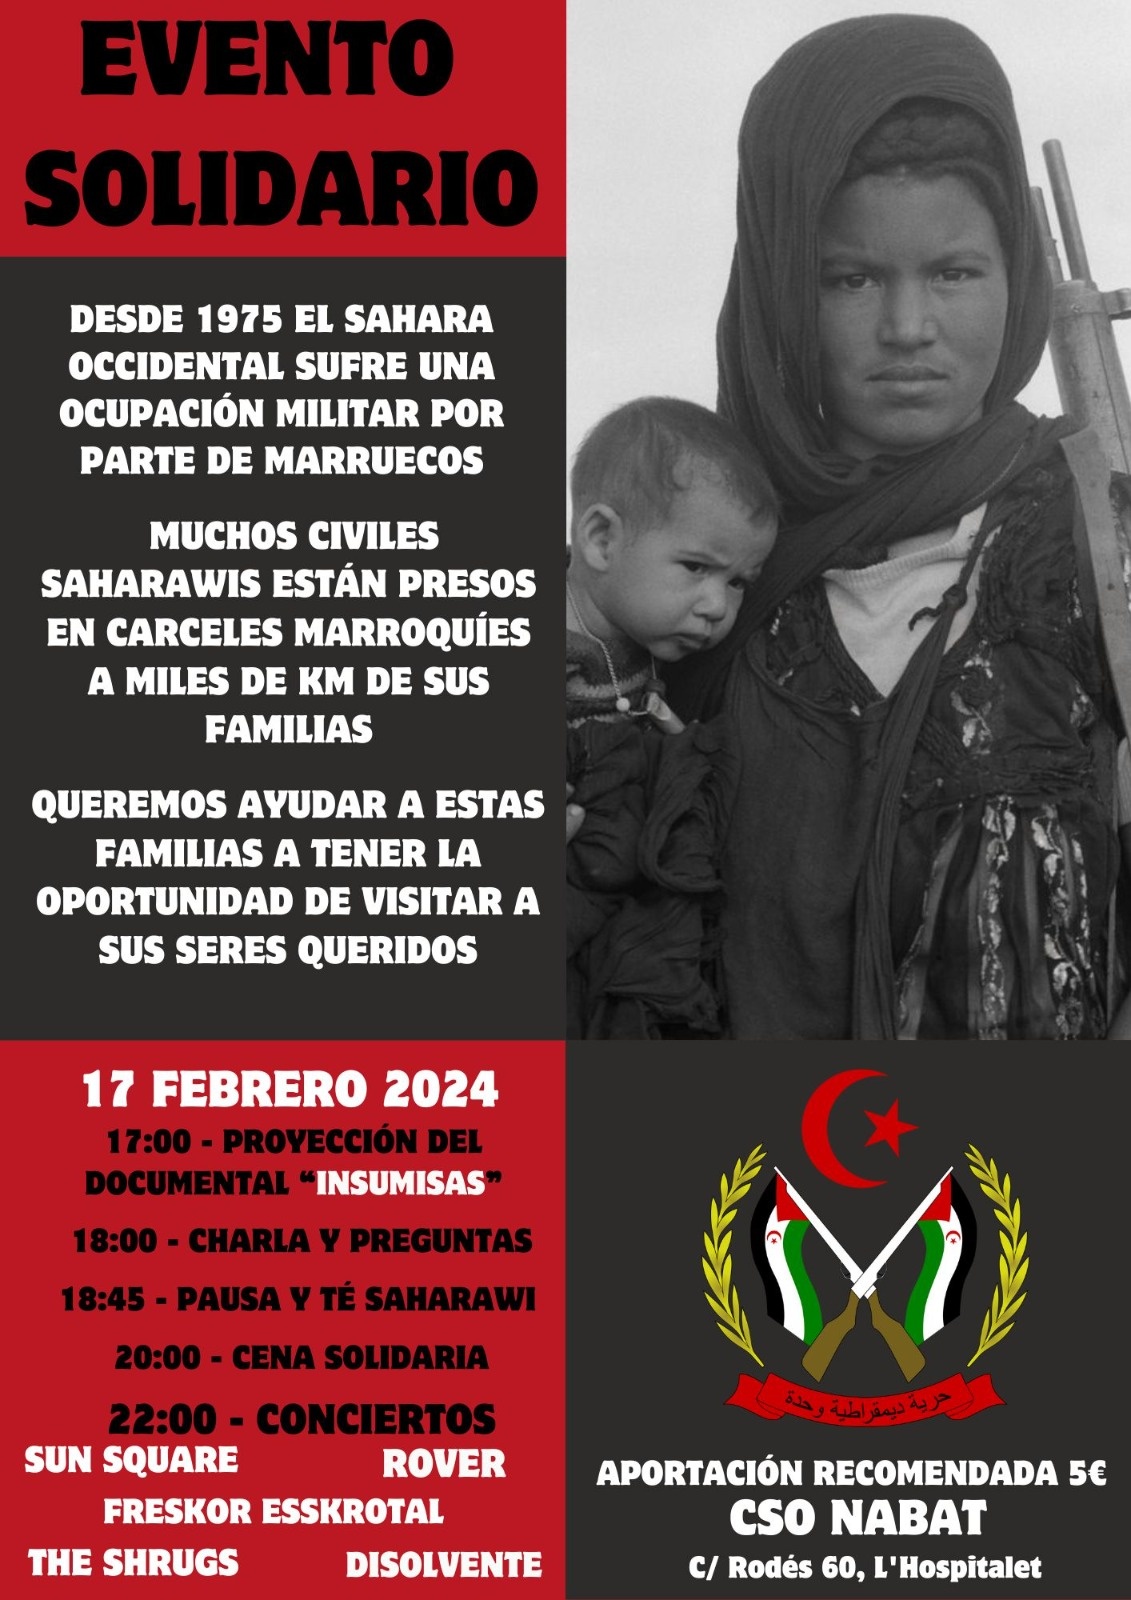 🇪🇭 Acte solidari amb el Poble Saharaui 🇪🇭